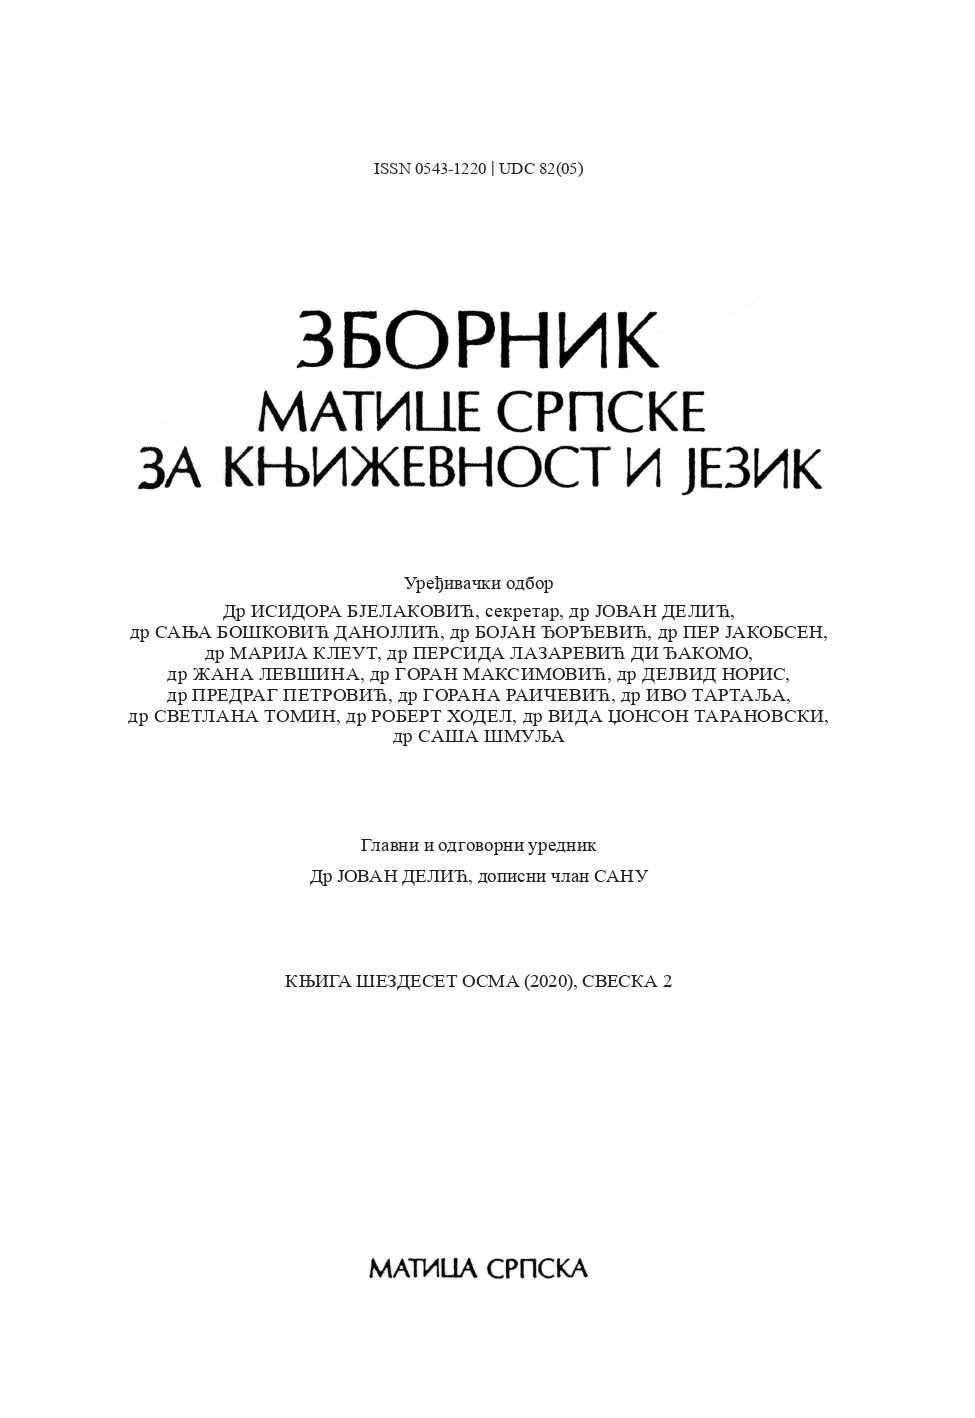 PRECIOUS FRUITS OF TRANSLATION CALCULATION Cover Image